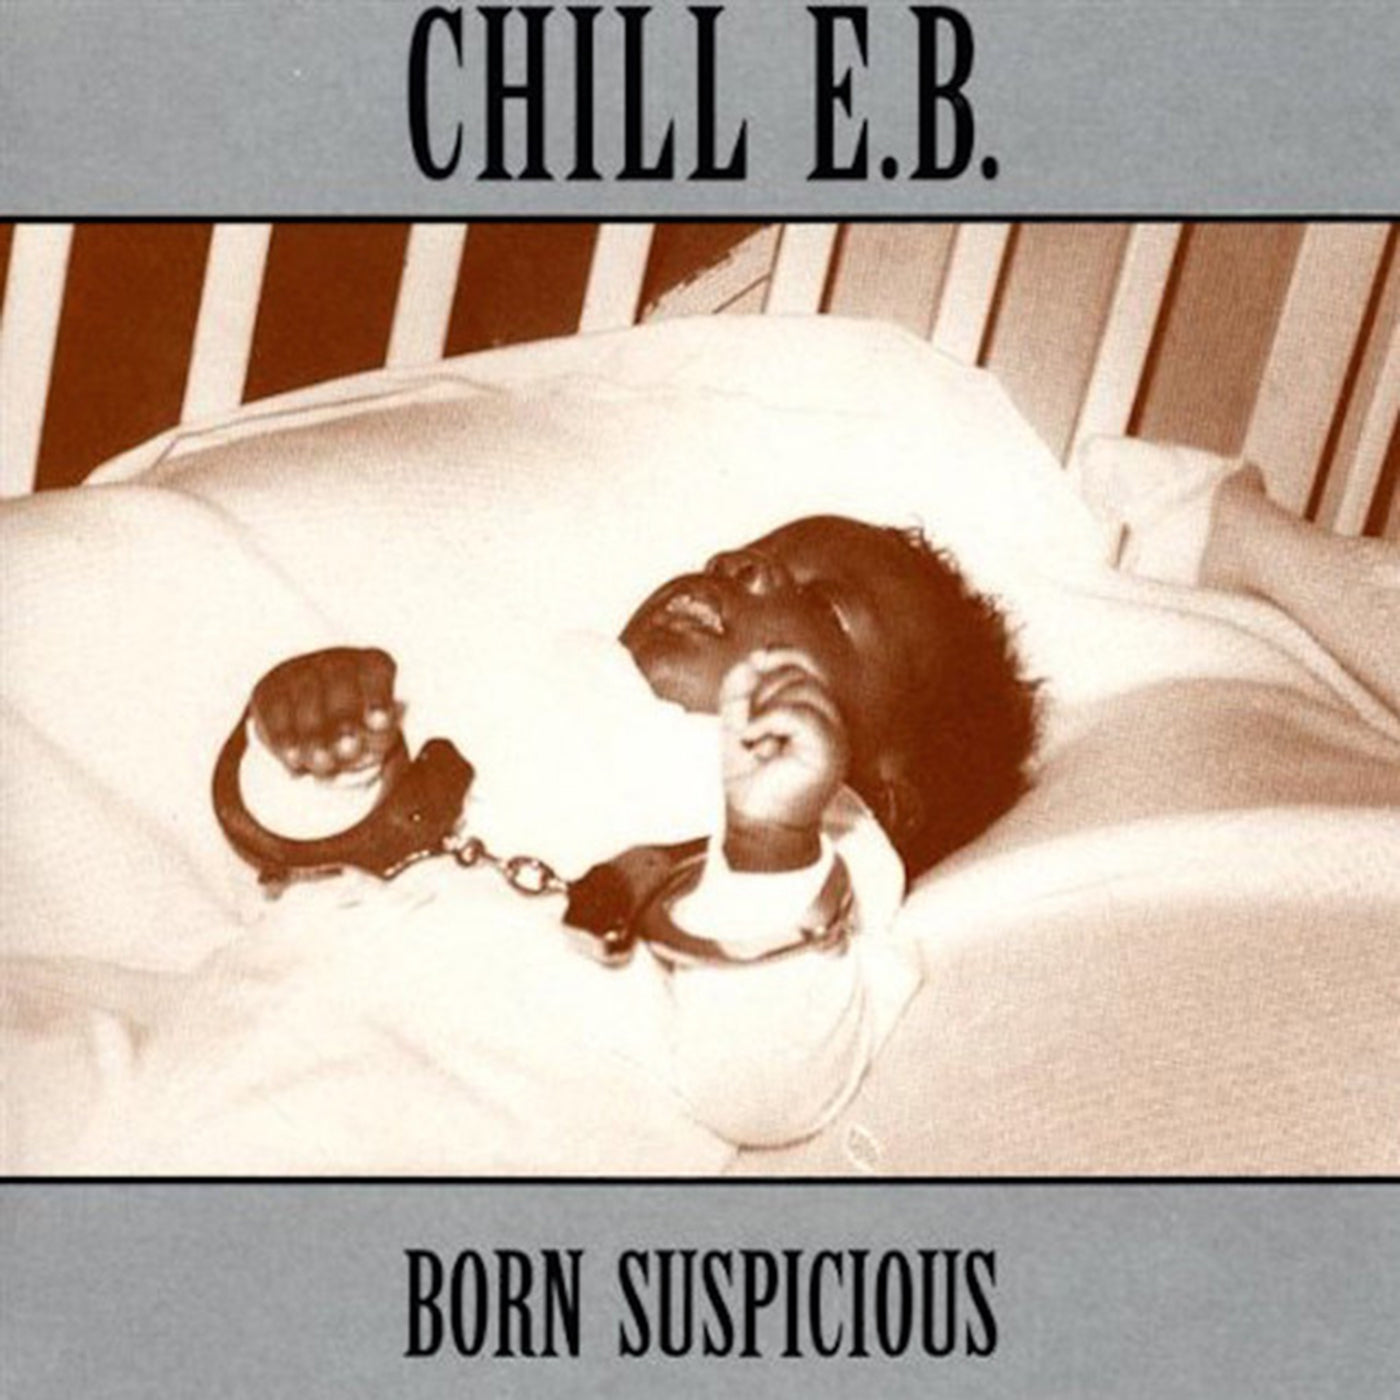 v124 - Chill E.B. - "Born Suspicious"